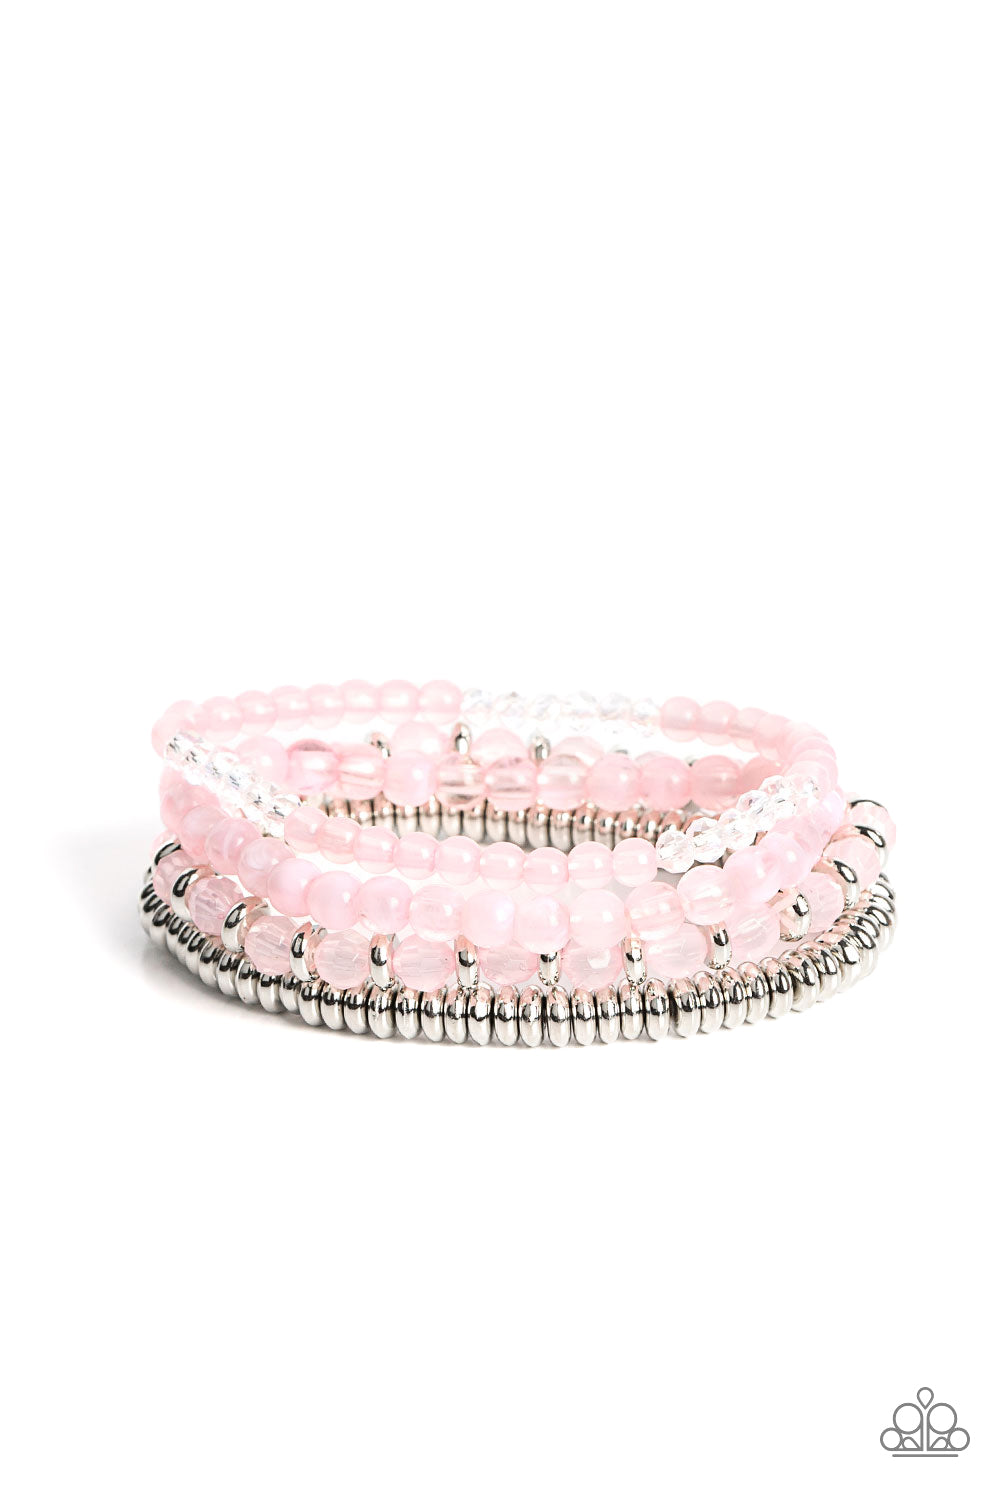 Destination Dreamscape - Pink Bracelet- Paparazzi Accessories